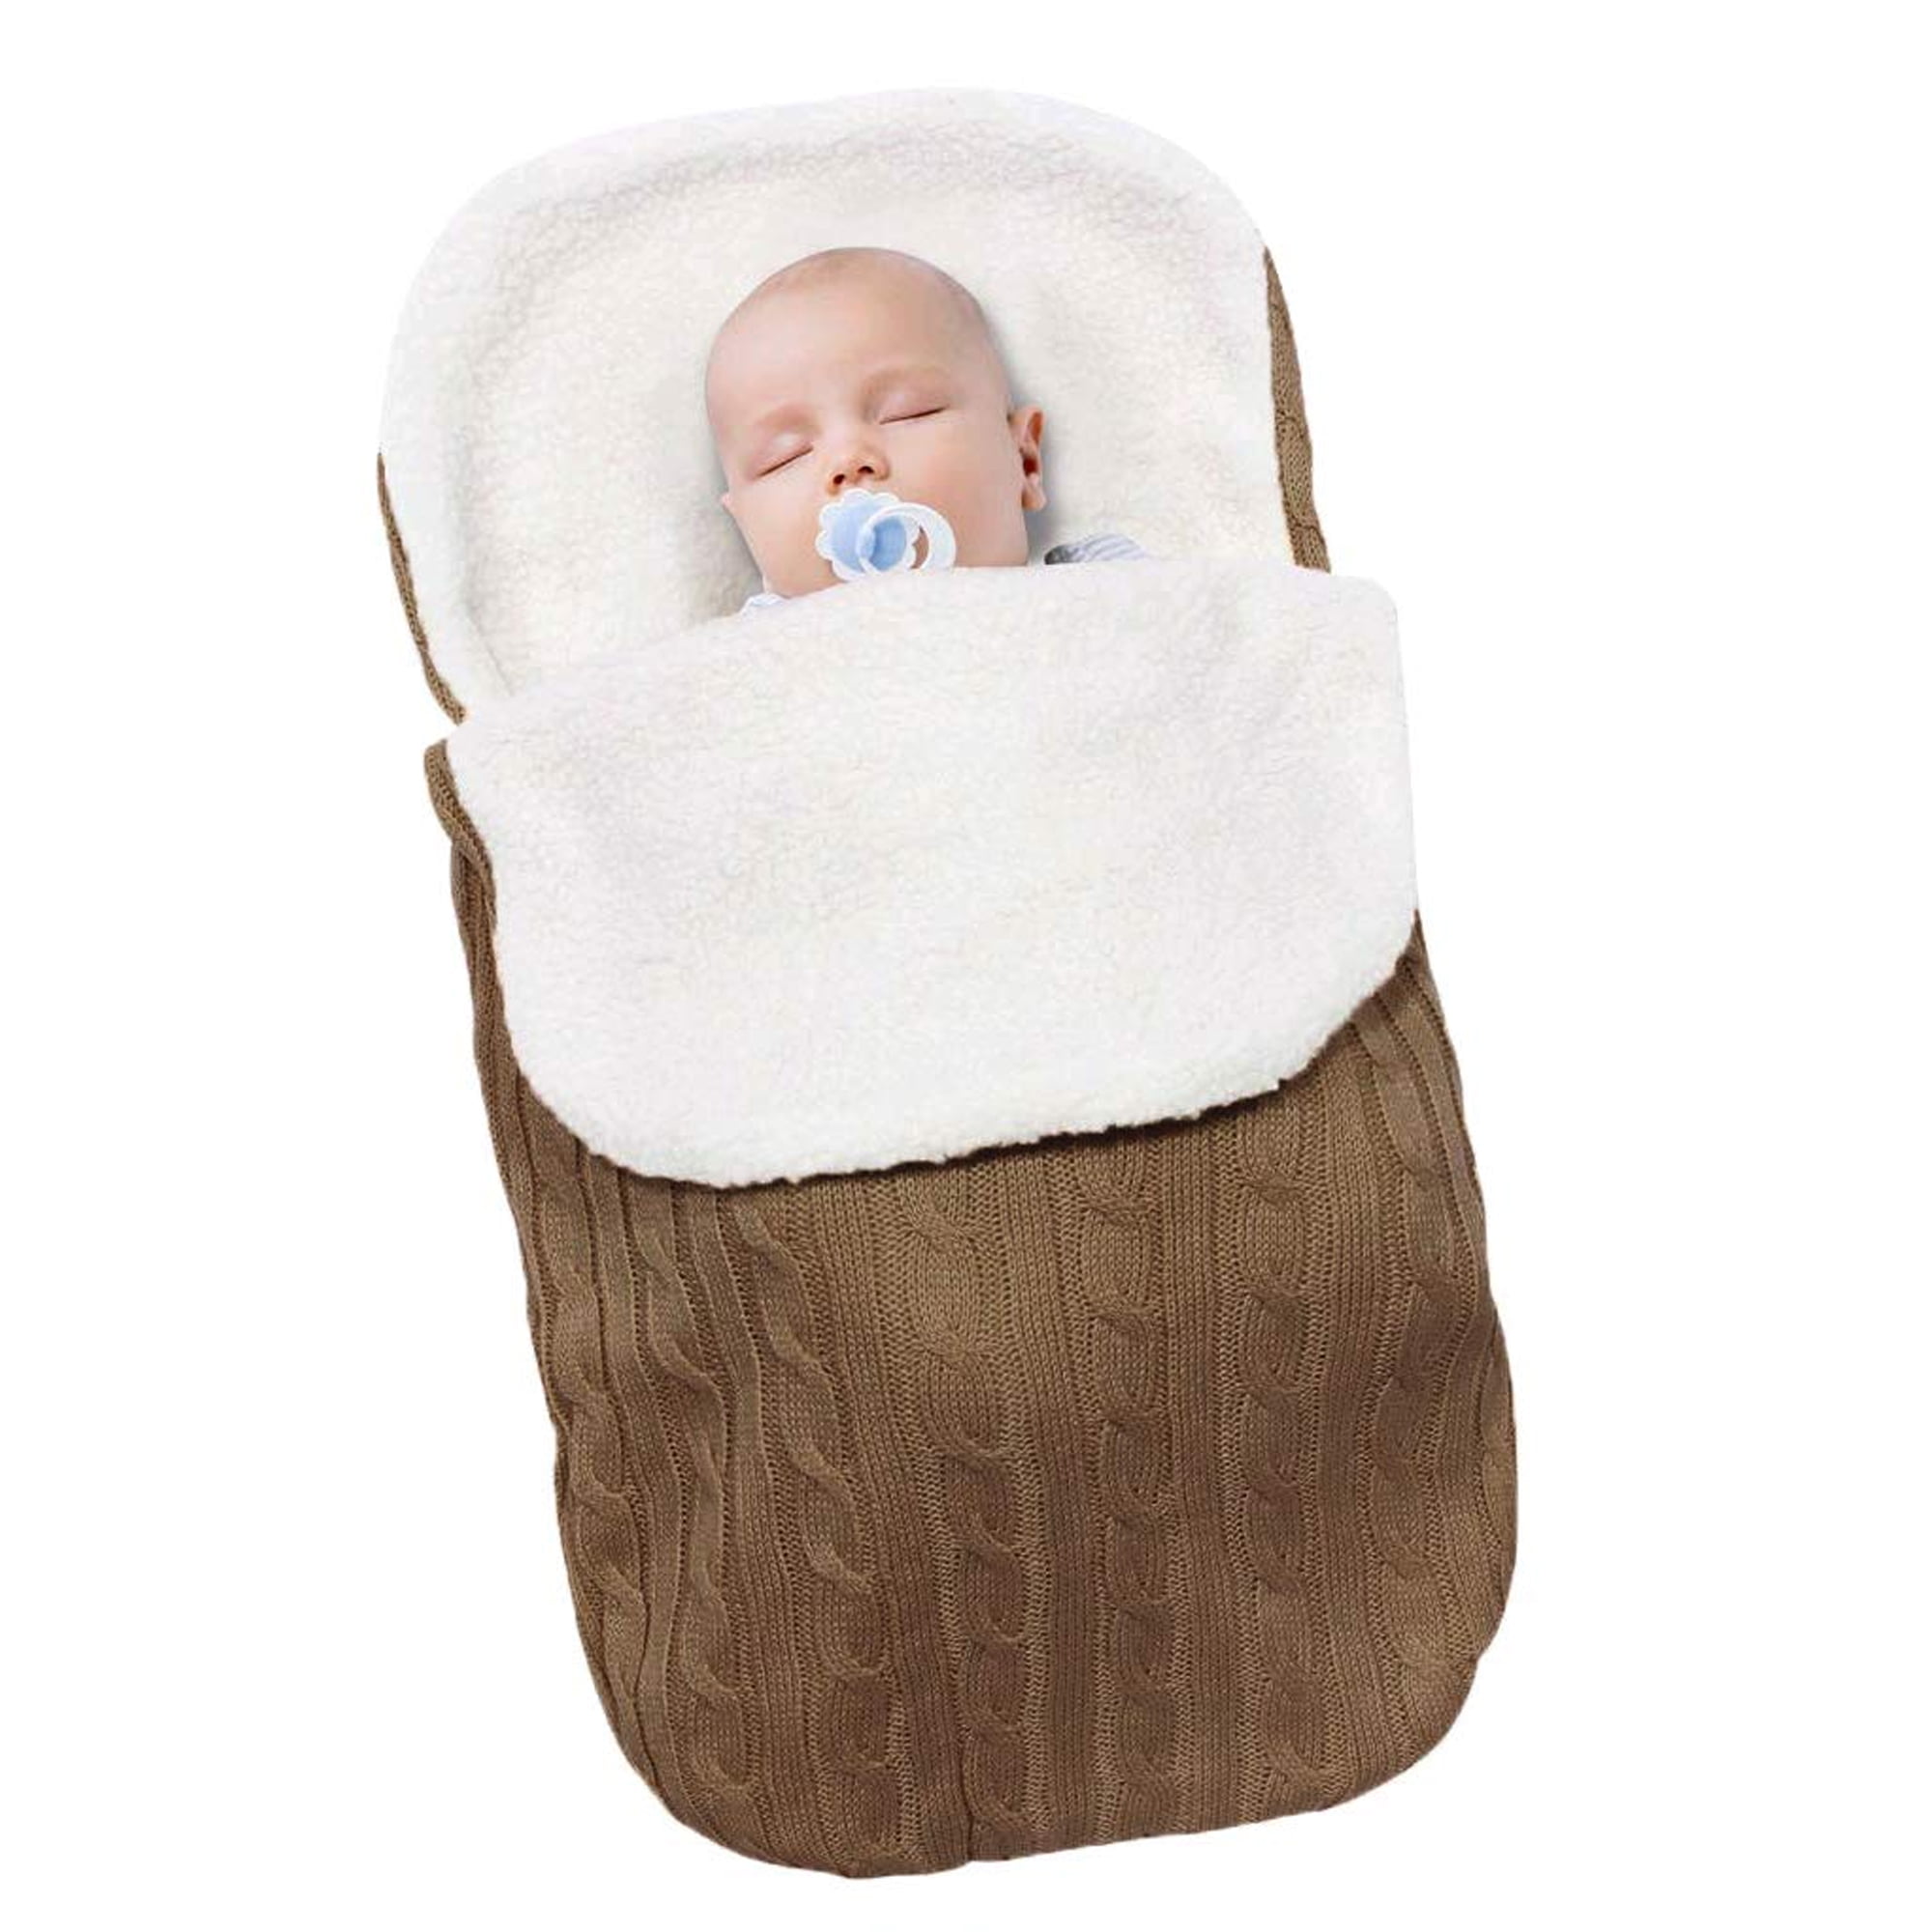 Baby Footmuff Sleeping Bag Pushchair Pram Stroller Car Seat Cot Bed Blanket Cosy 